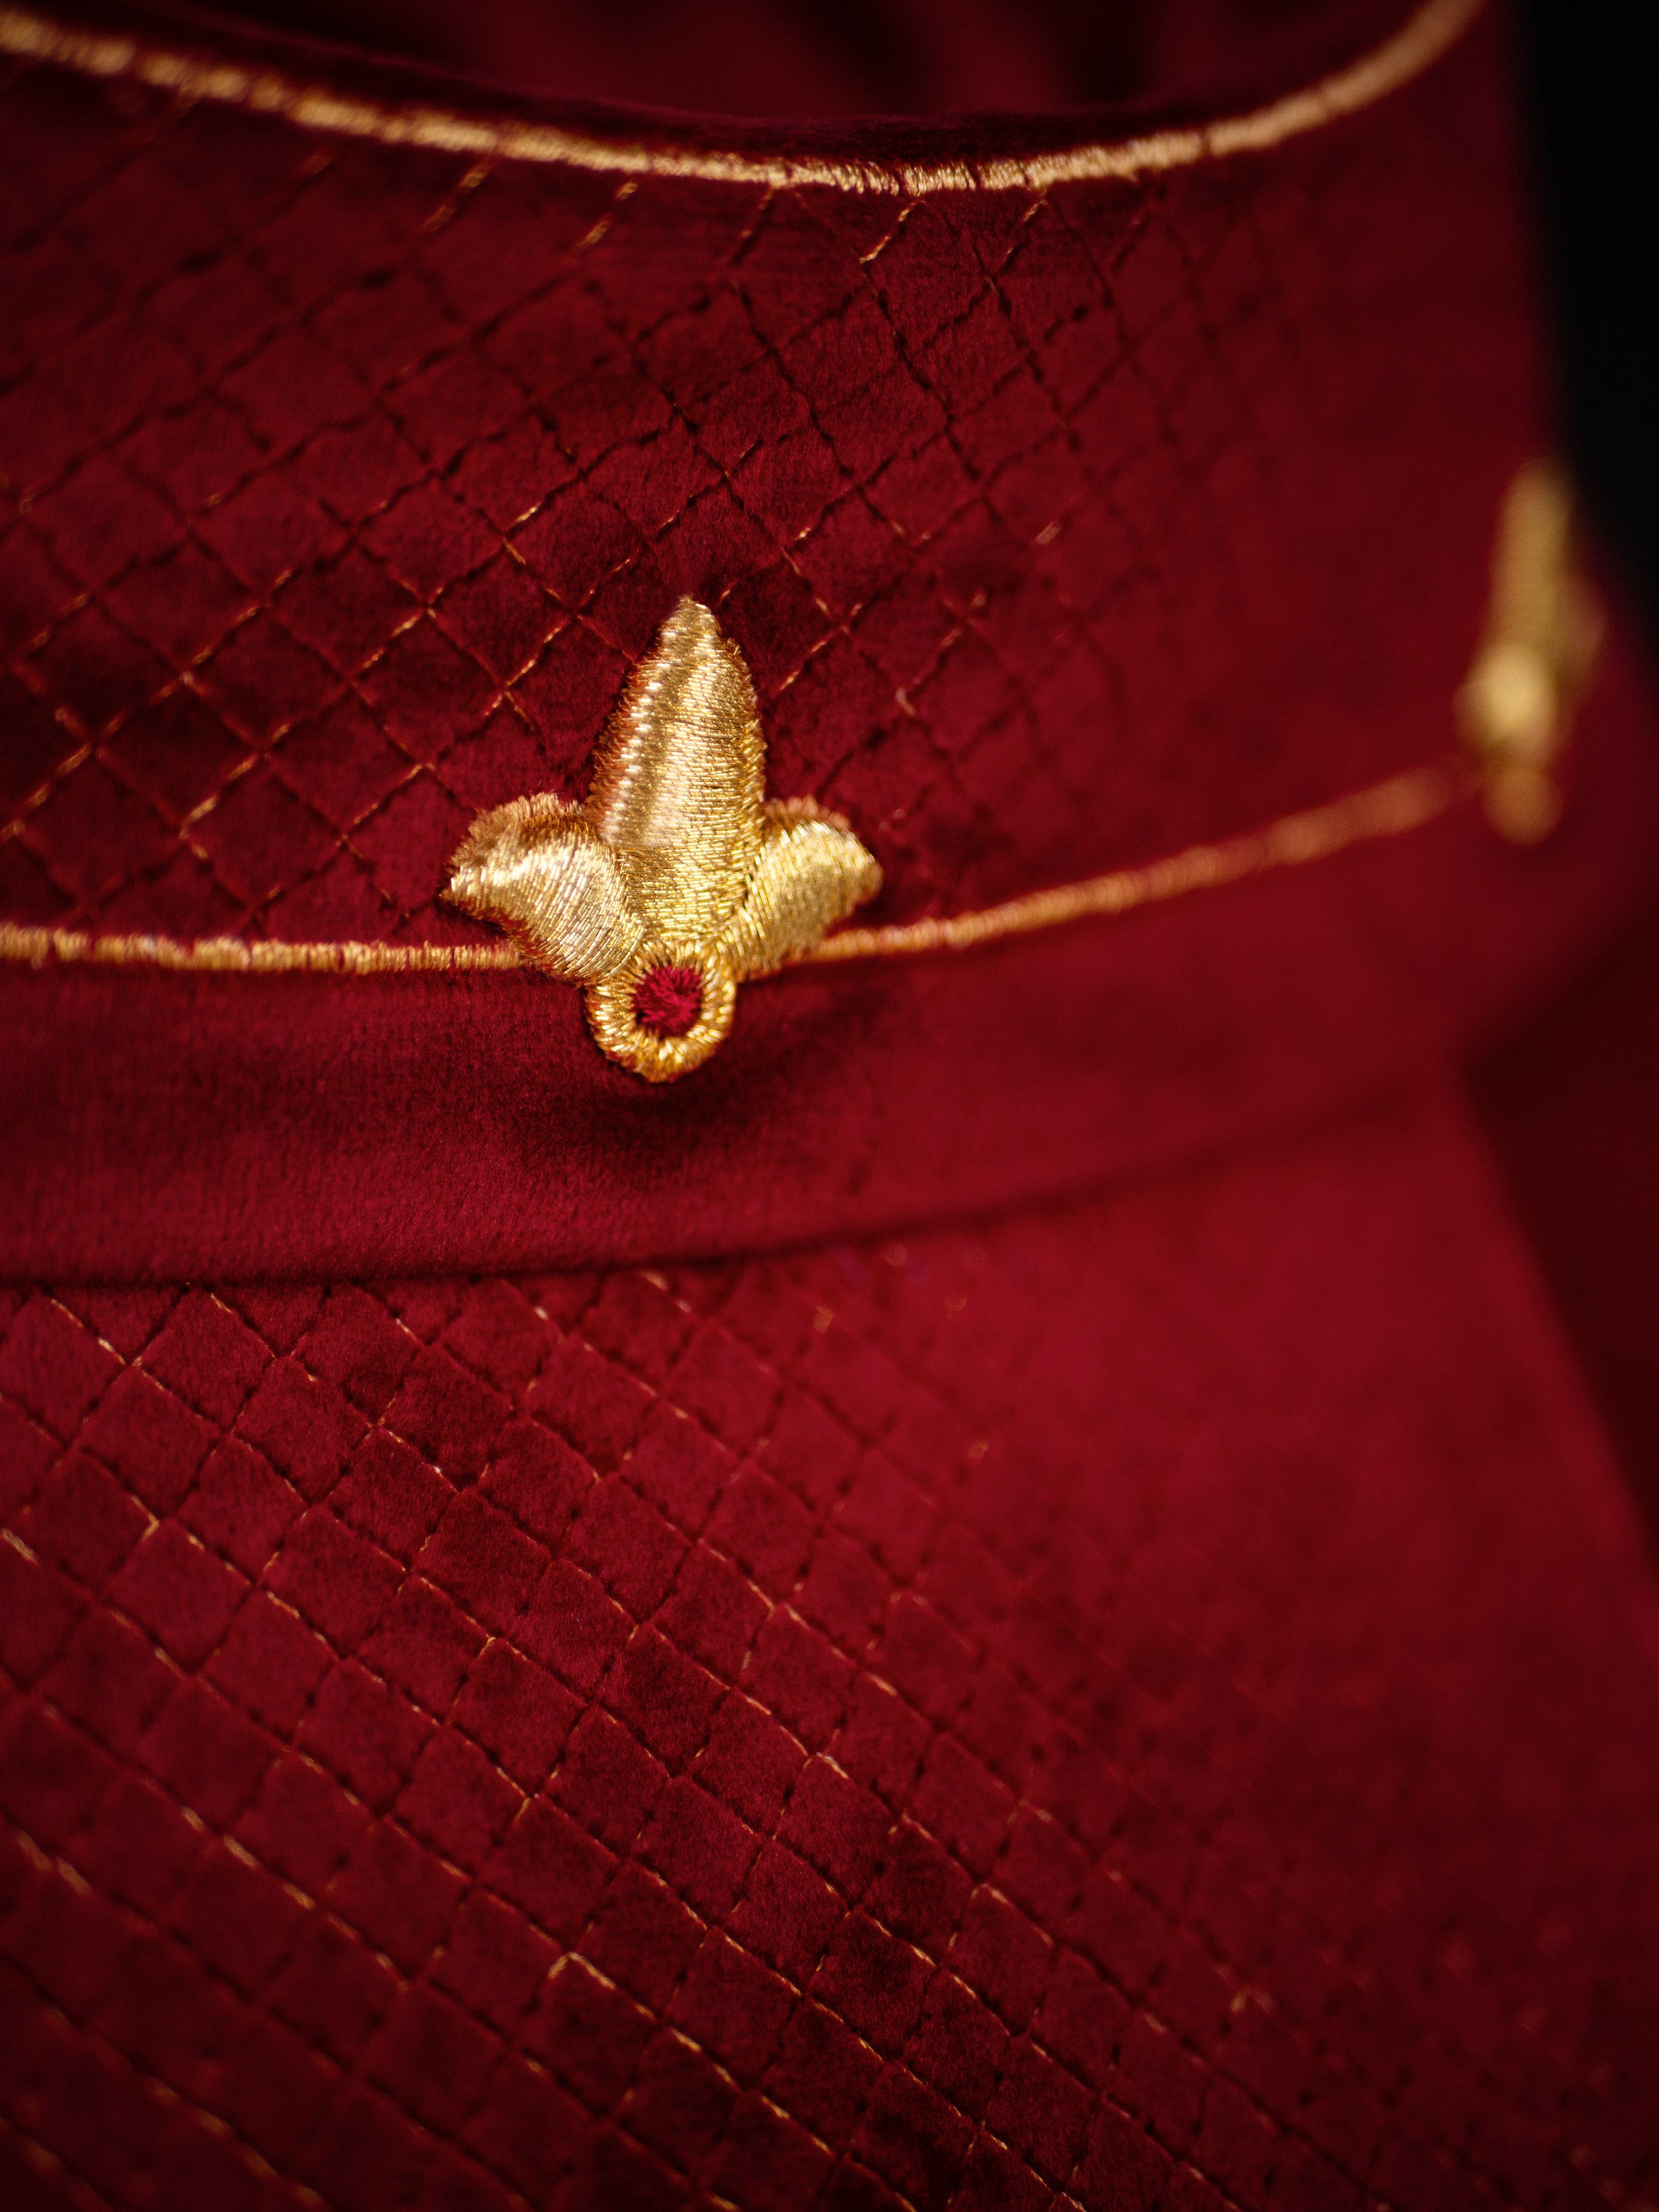 Ornat z aksamitnym czerwonym pasem i haftem krzyży